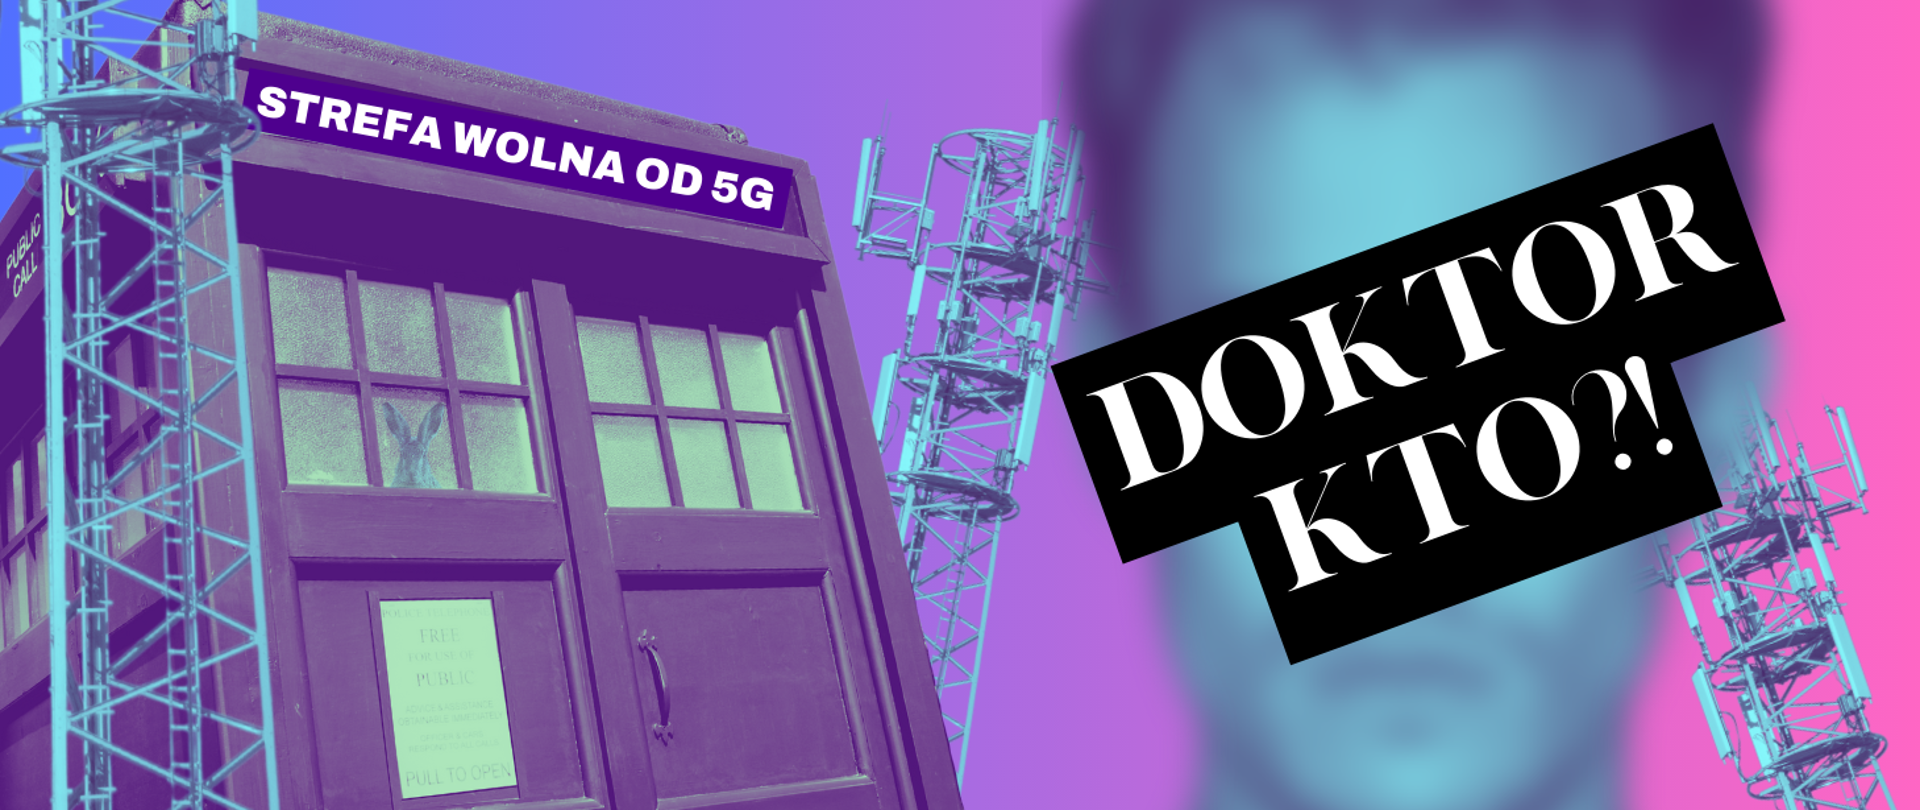 Na ilustracji w tle budka policyjna znana z serialu "Dr Who" z napisem "Strefa wolna od 5G", otoczona masztami sieci komórkowej. Na pierwszym planie rozmyta twarz mężczyzny z nałożonym na nią napisem "Doktor kto?!".